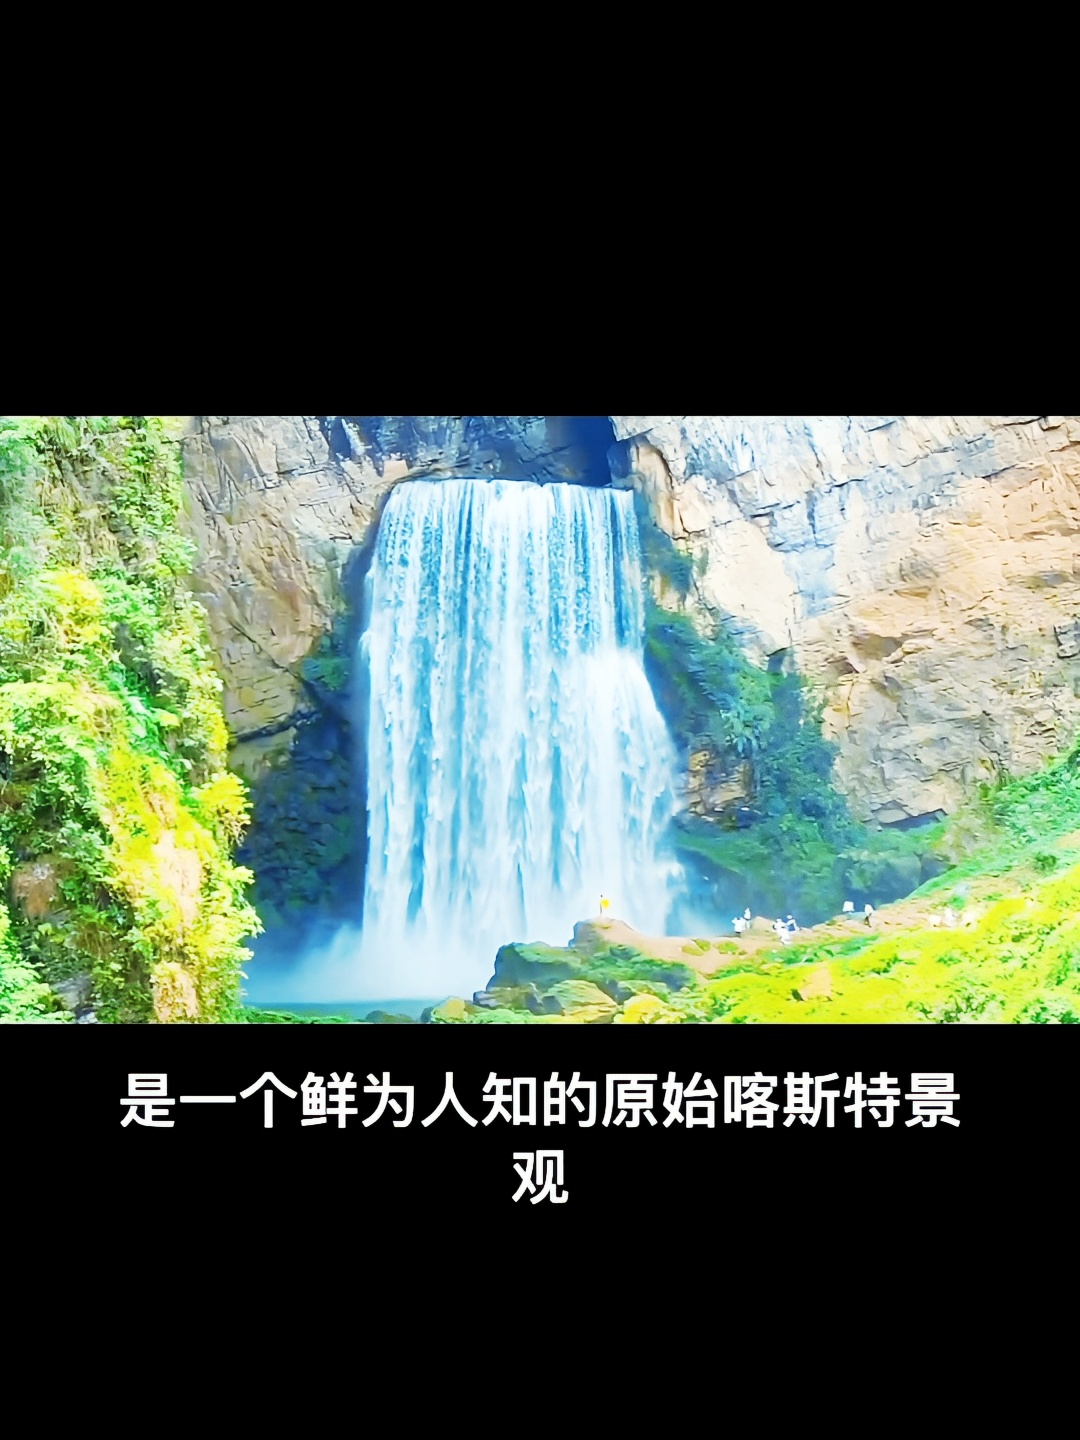 贵州羊皮洞瀑布景区—大自然的壮丽与神秘